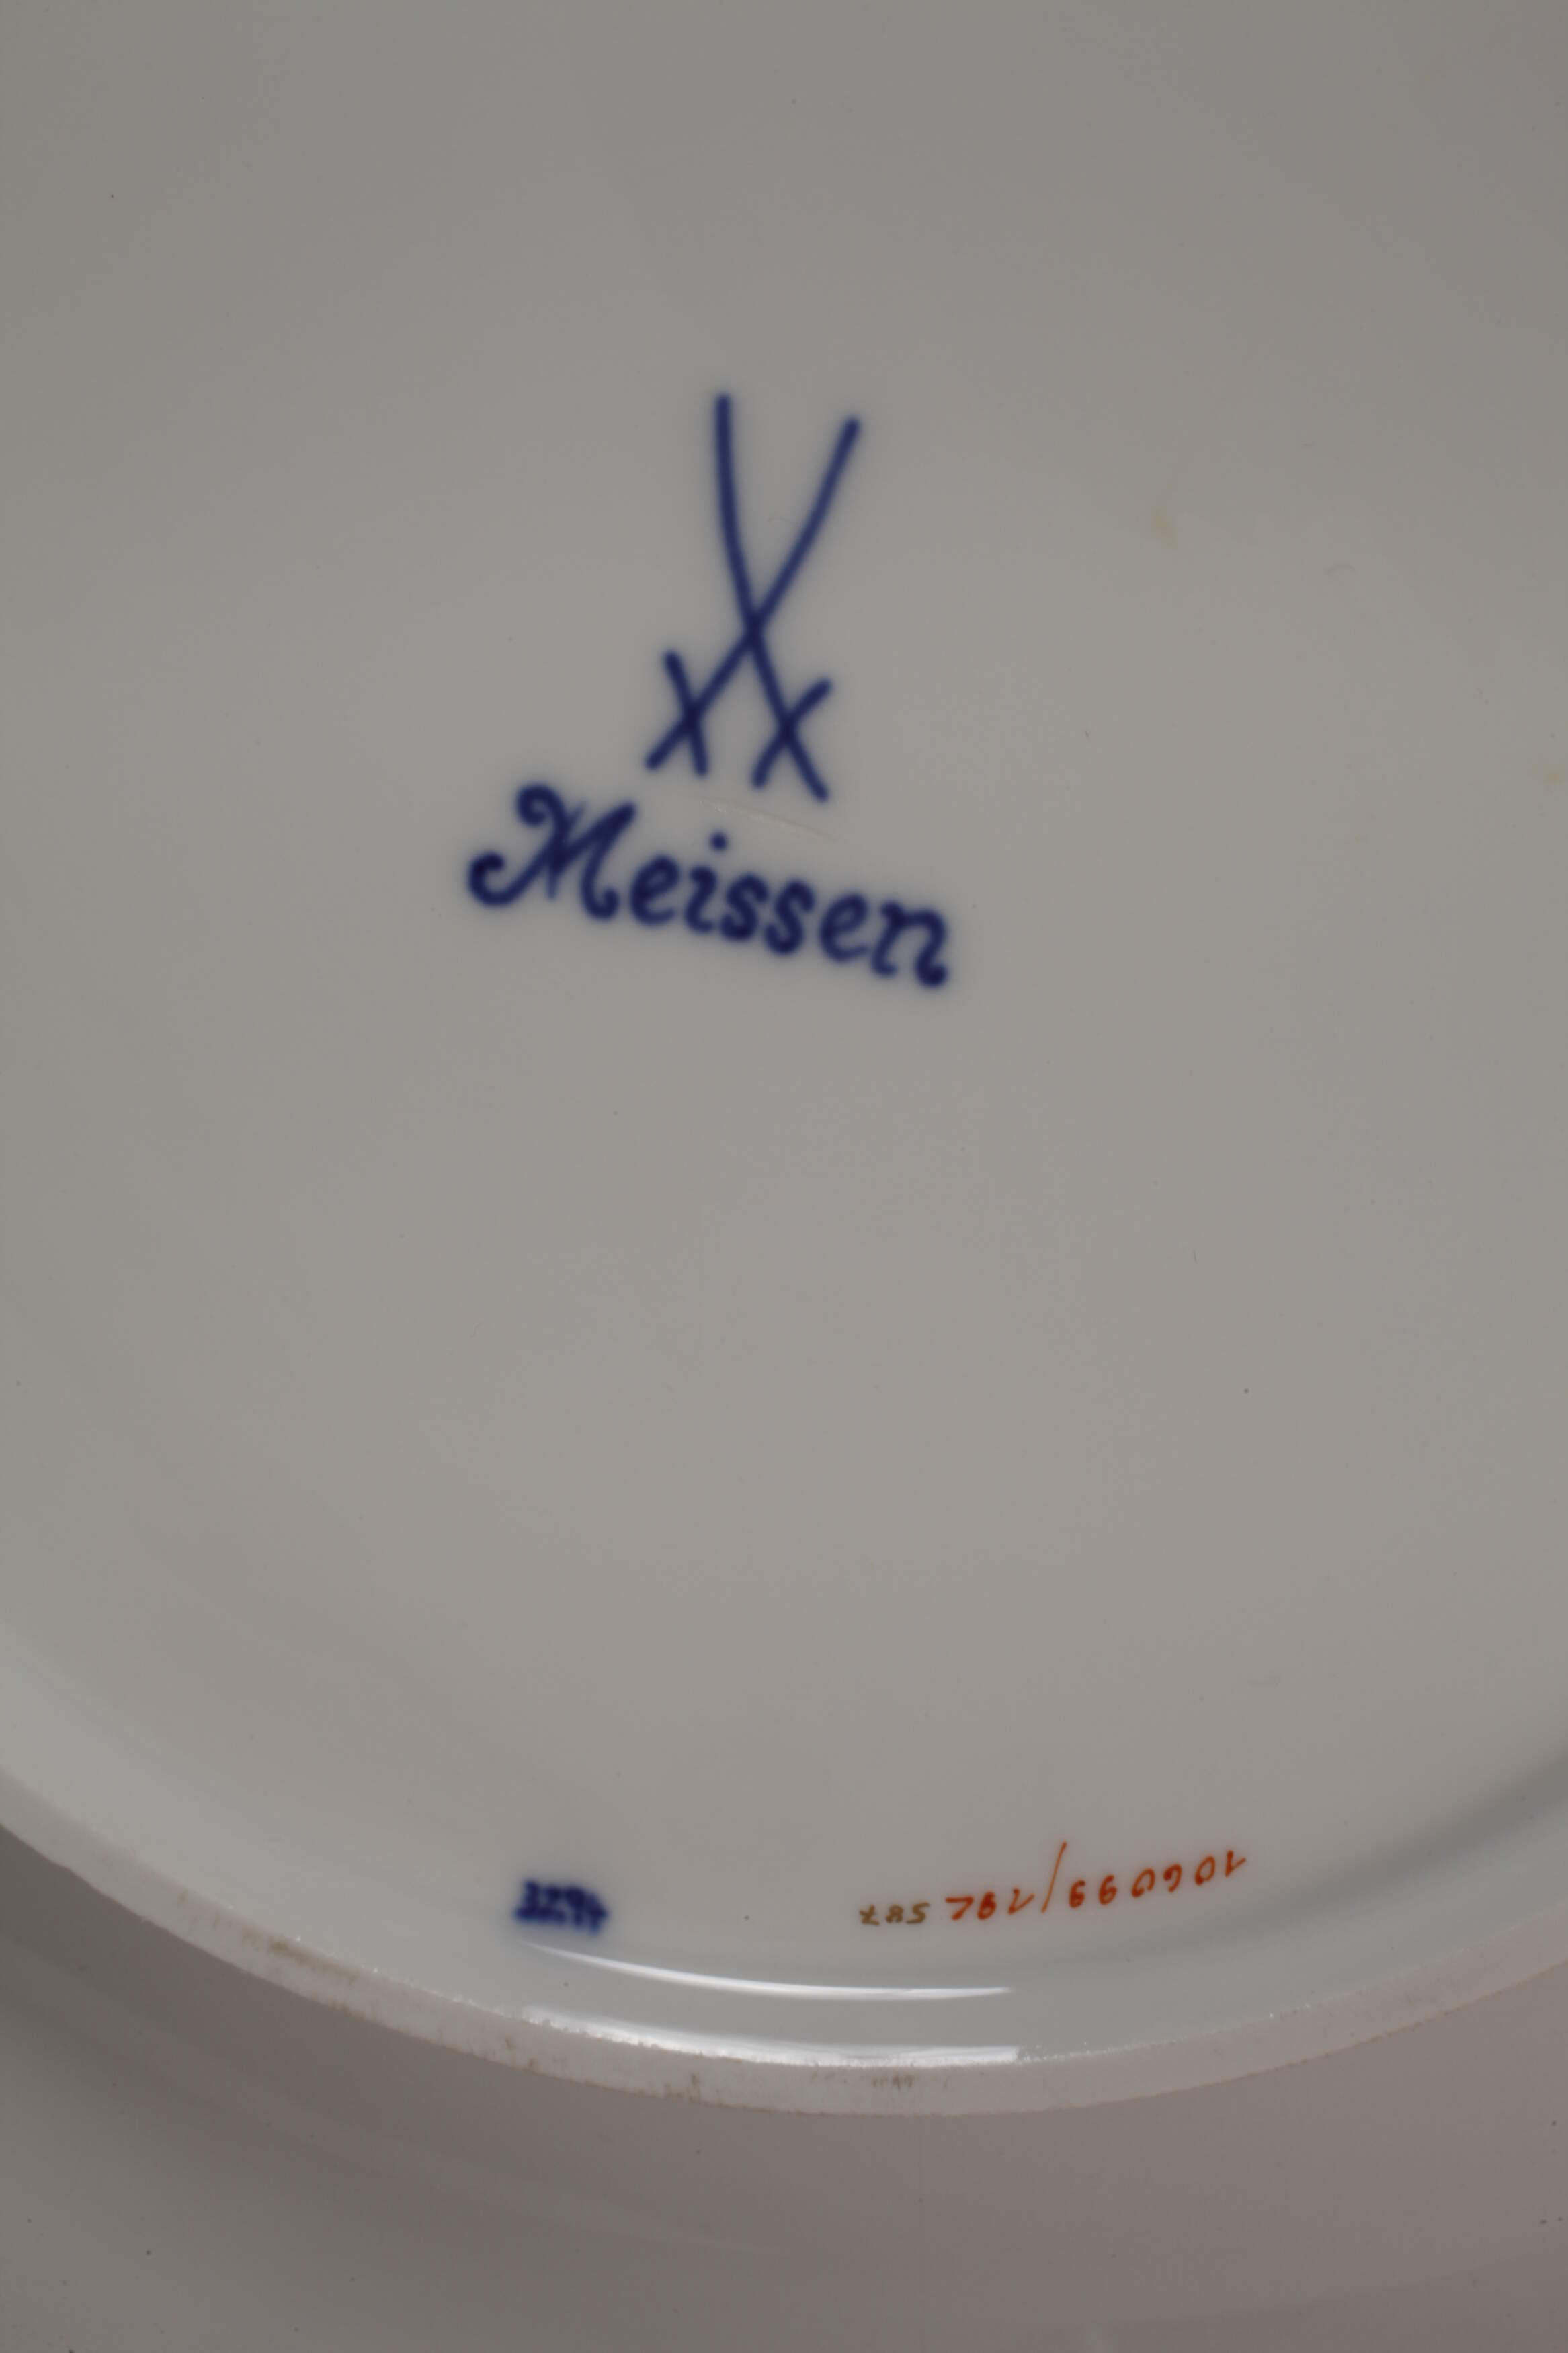 Meissen ceremonial bowl "Blumenbukett" - Image 3 of 3